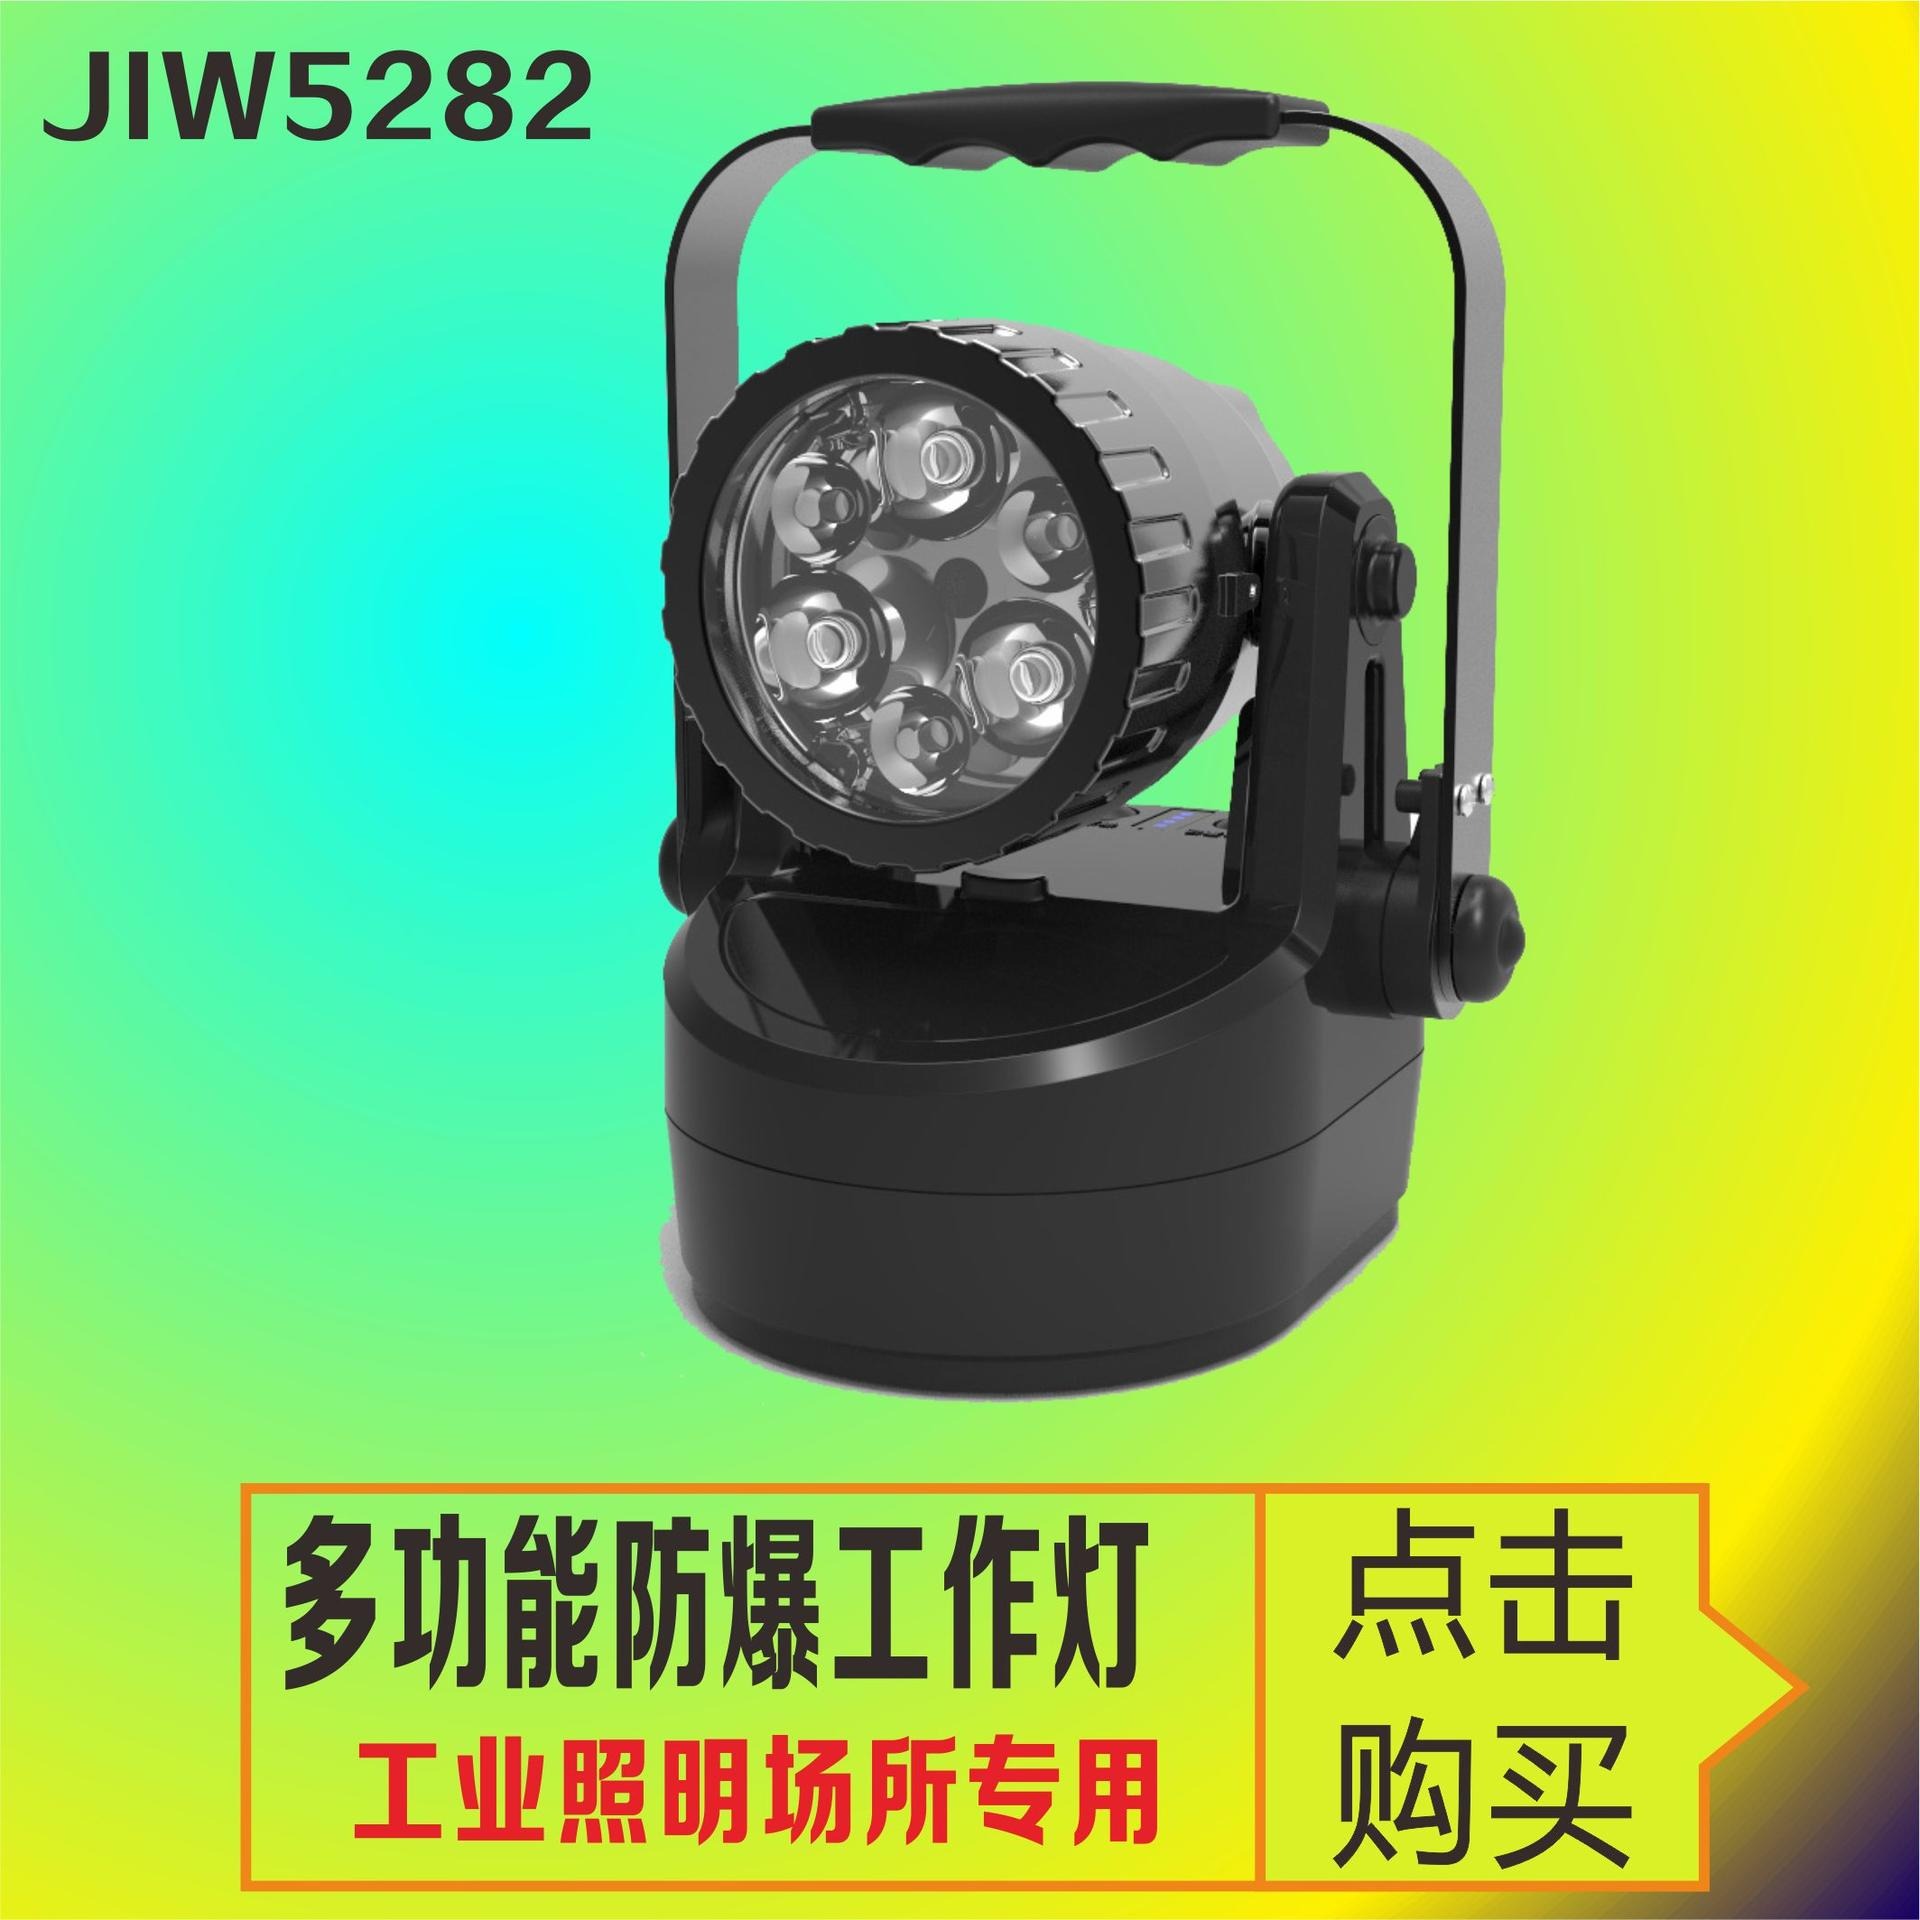 JIW5282轻便式多功能手提灯 隧道铁路货场检修灯 带磁力吸附移动照明灯 紧急事故抢修灯